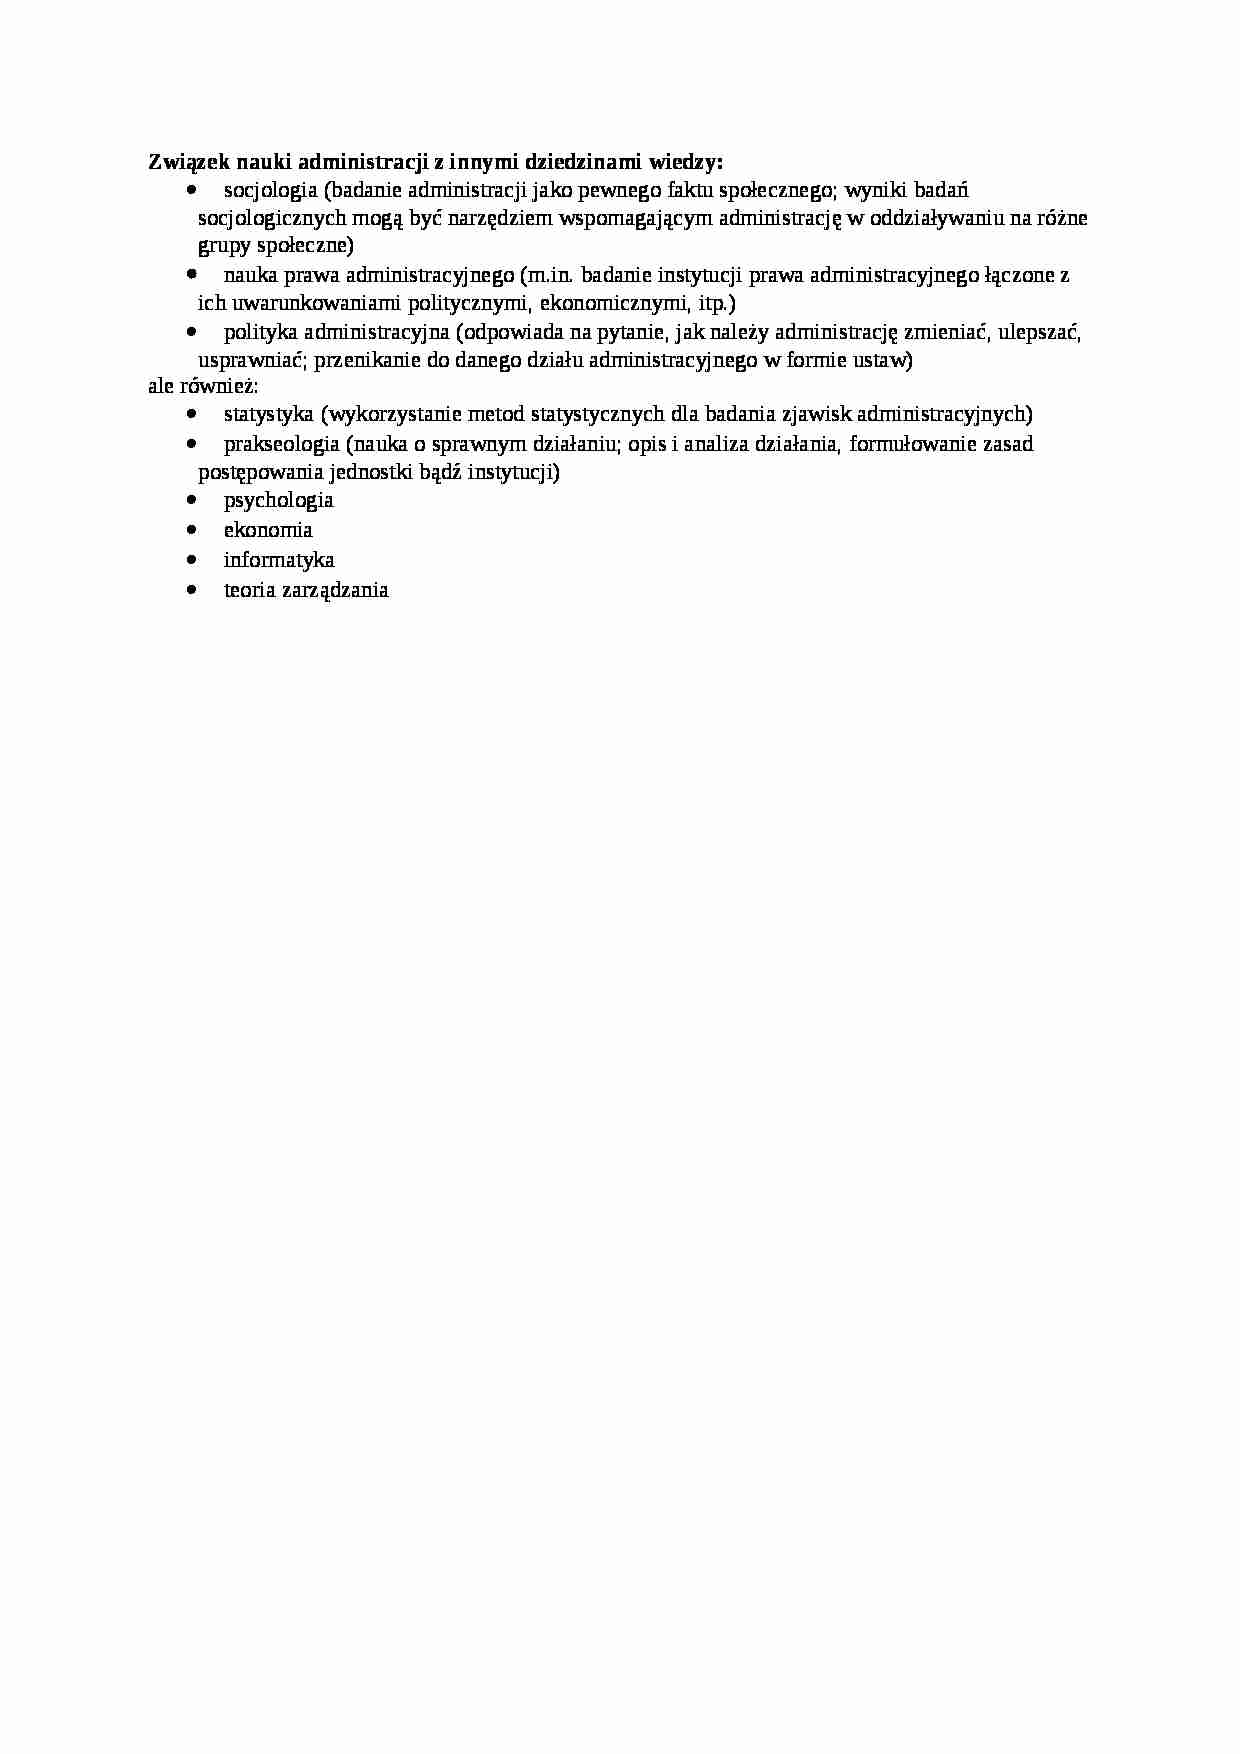 Związek nauki administracji z innymi dziedzinami wiedzy - strona 1